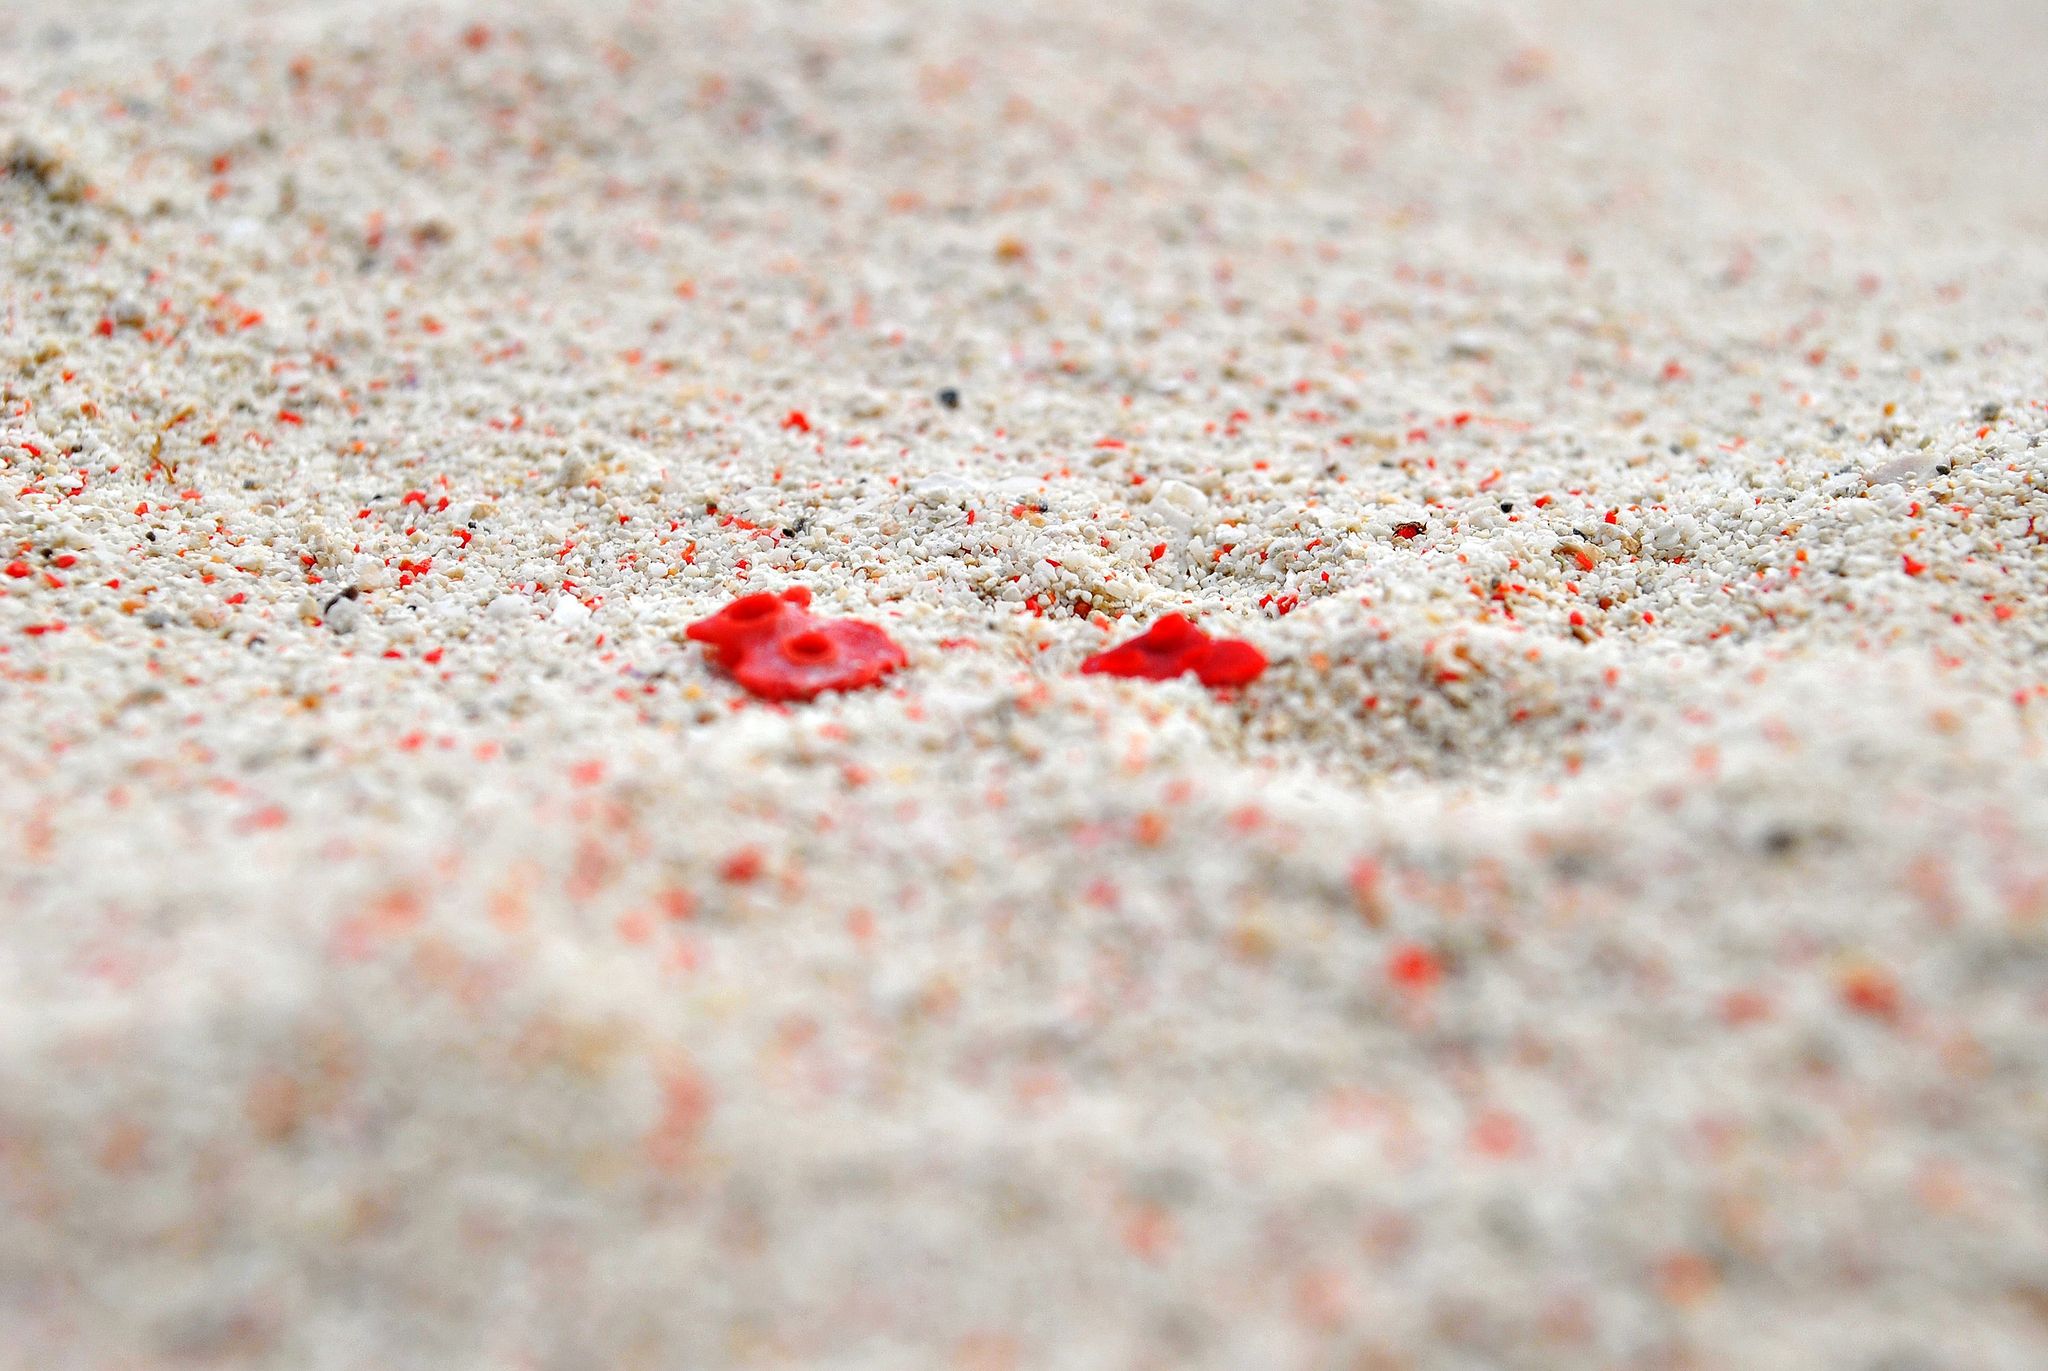 Rood koraal dat in het zand wordt verpulverd geeft de Pink Beach op het Isla Gran Santa Cruz  bij Zamboanga op de Filippijnen zijn roze tint